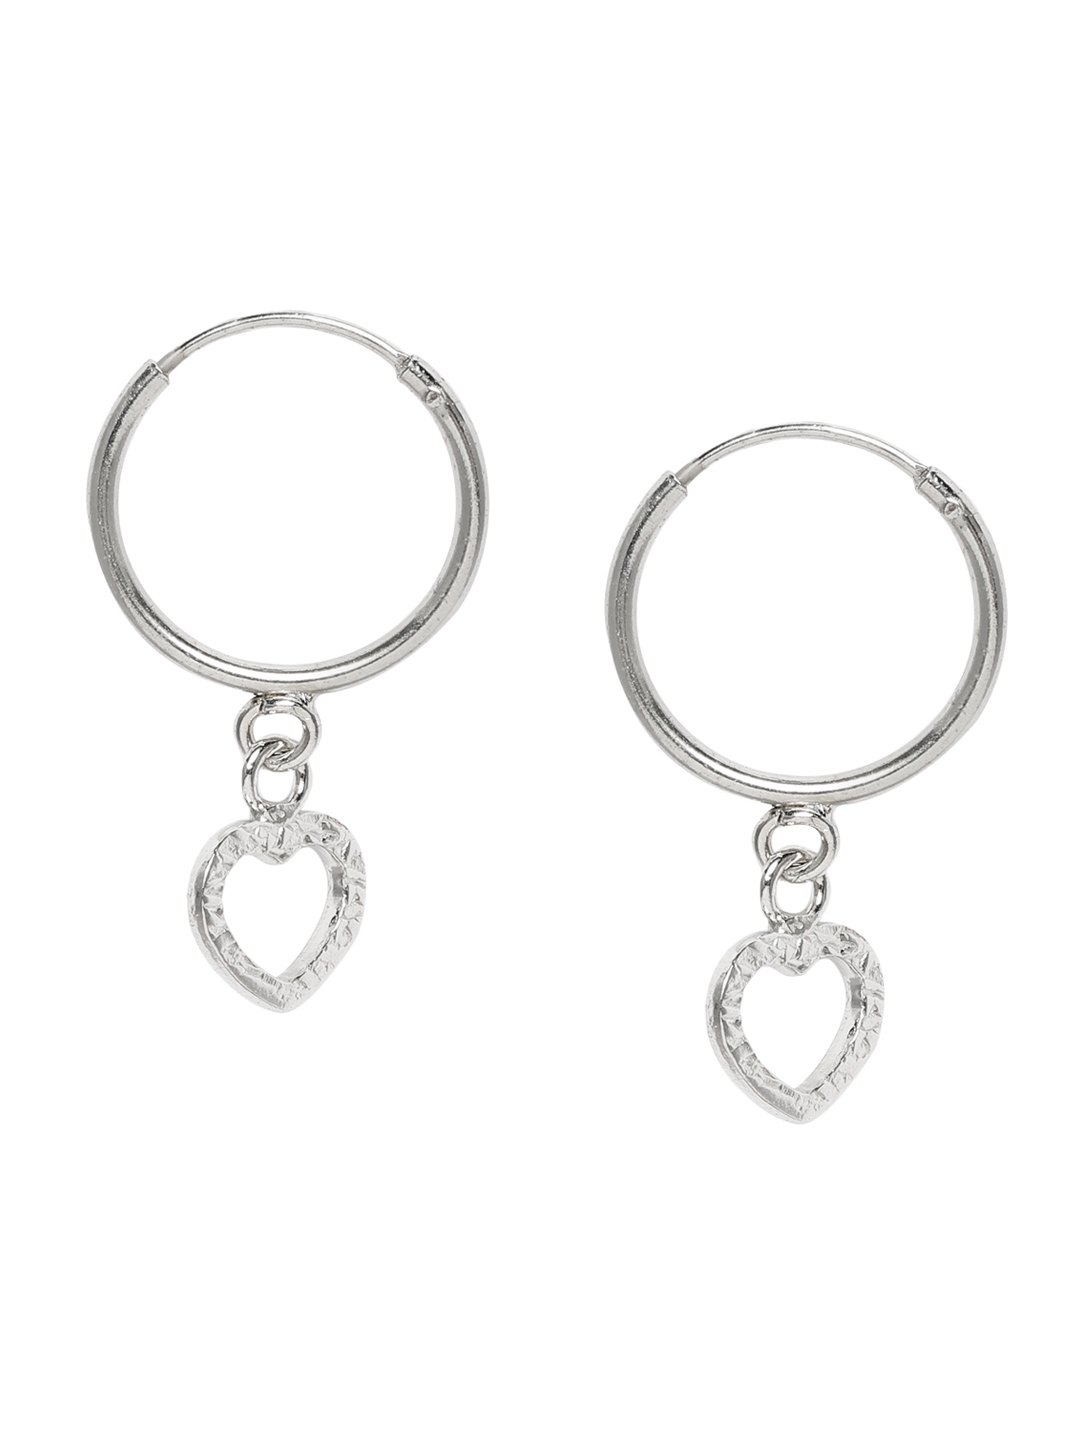 Buy Giva Sterling Silver Heart Shaped Hoop Earrings Earrings For